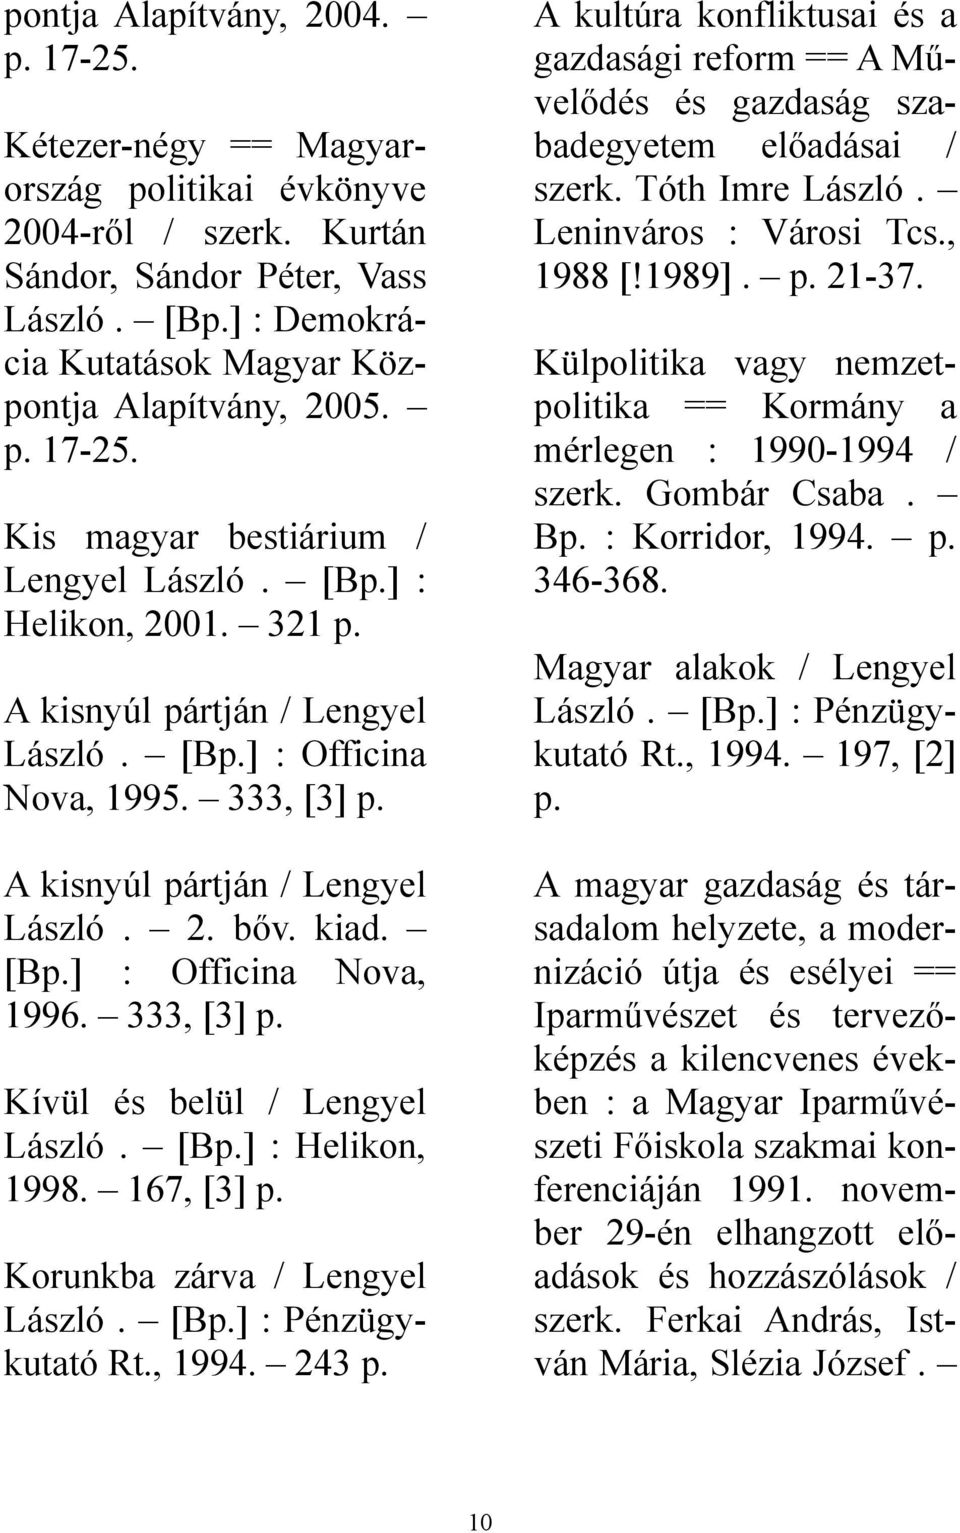 333, [3] A kisnyúl pártján / Lengyel László. 2. bőv. kiad. [B] : Officina Nova, 1996. 333, [3] Kívül és belül / Lengyel László. [B] : Helikon, 1998. 167, [3] Korunkba zárva / Lengyel László.